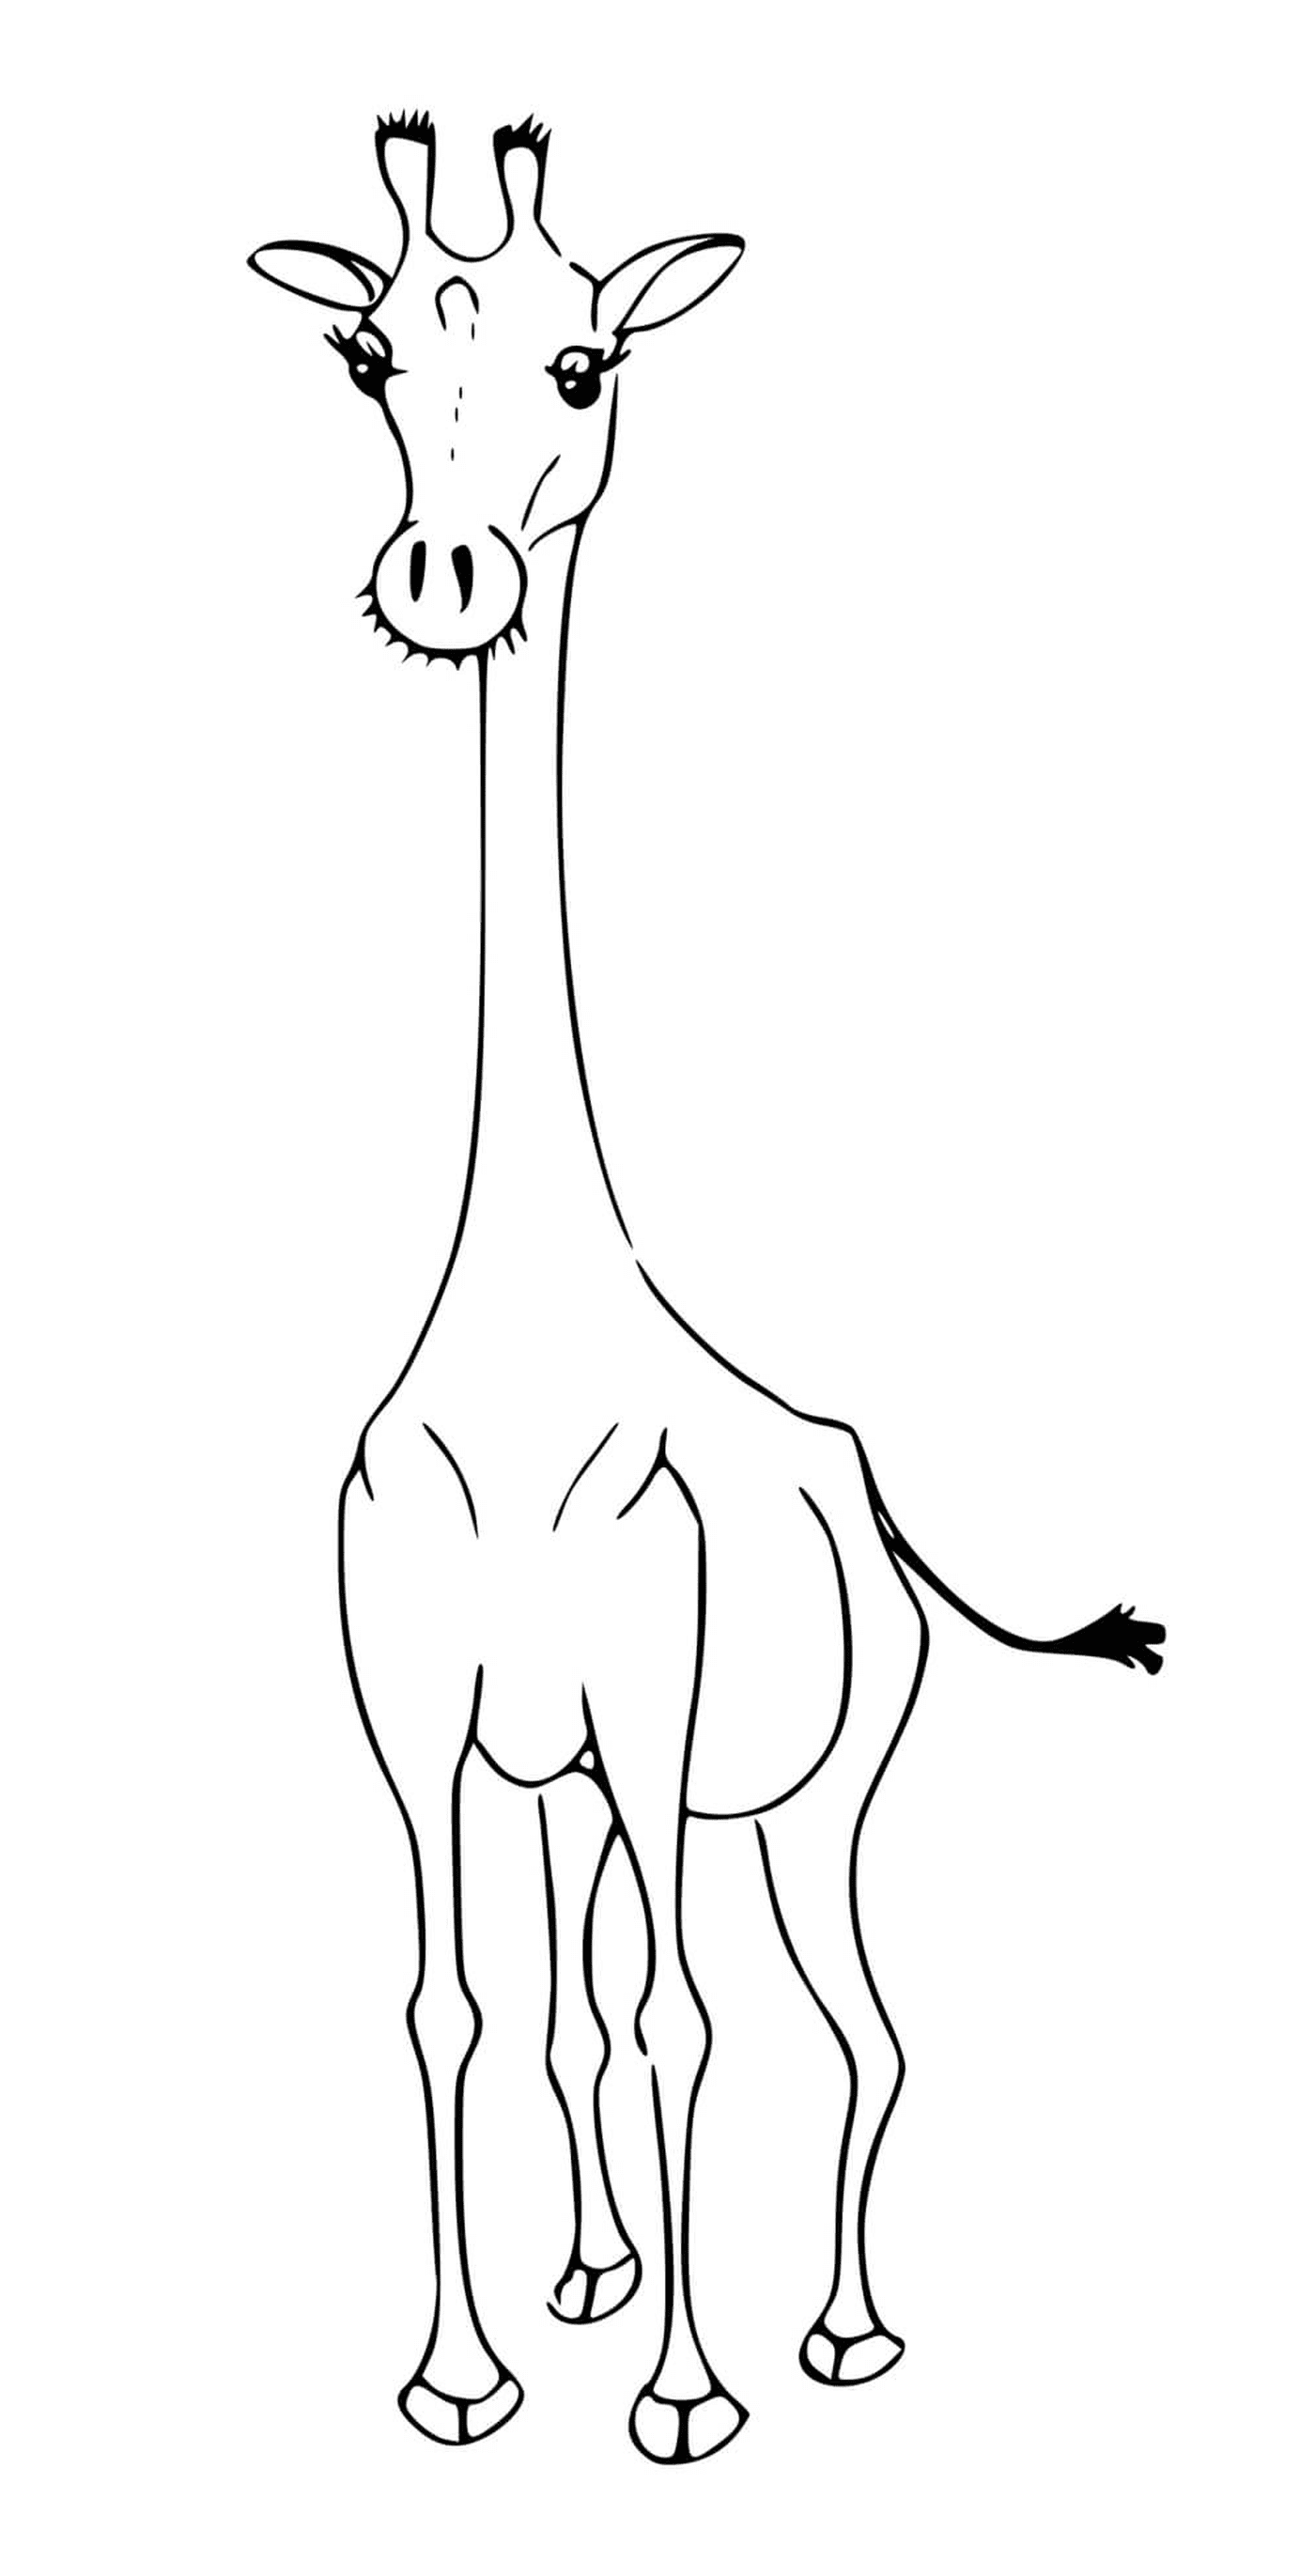  Eine Giraffe ohne ihre charakteristischen Flecken 